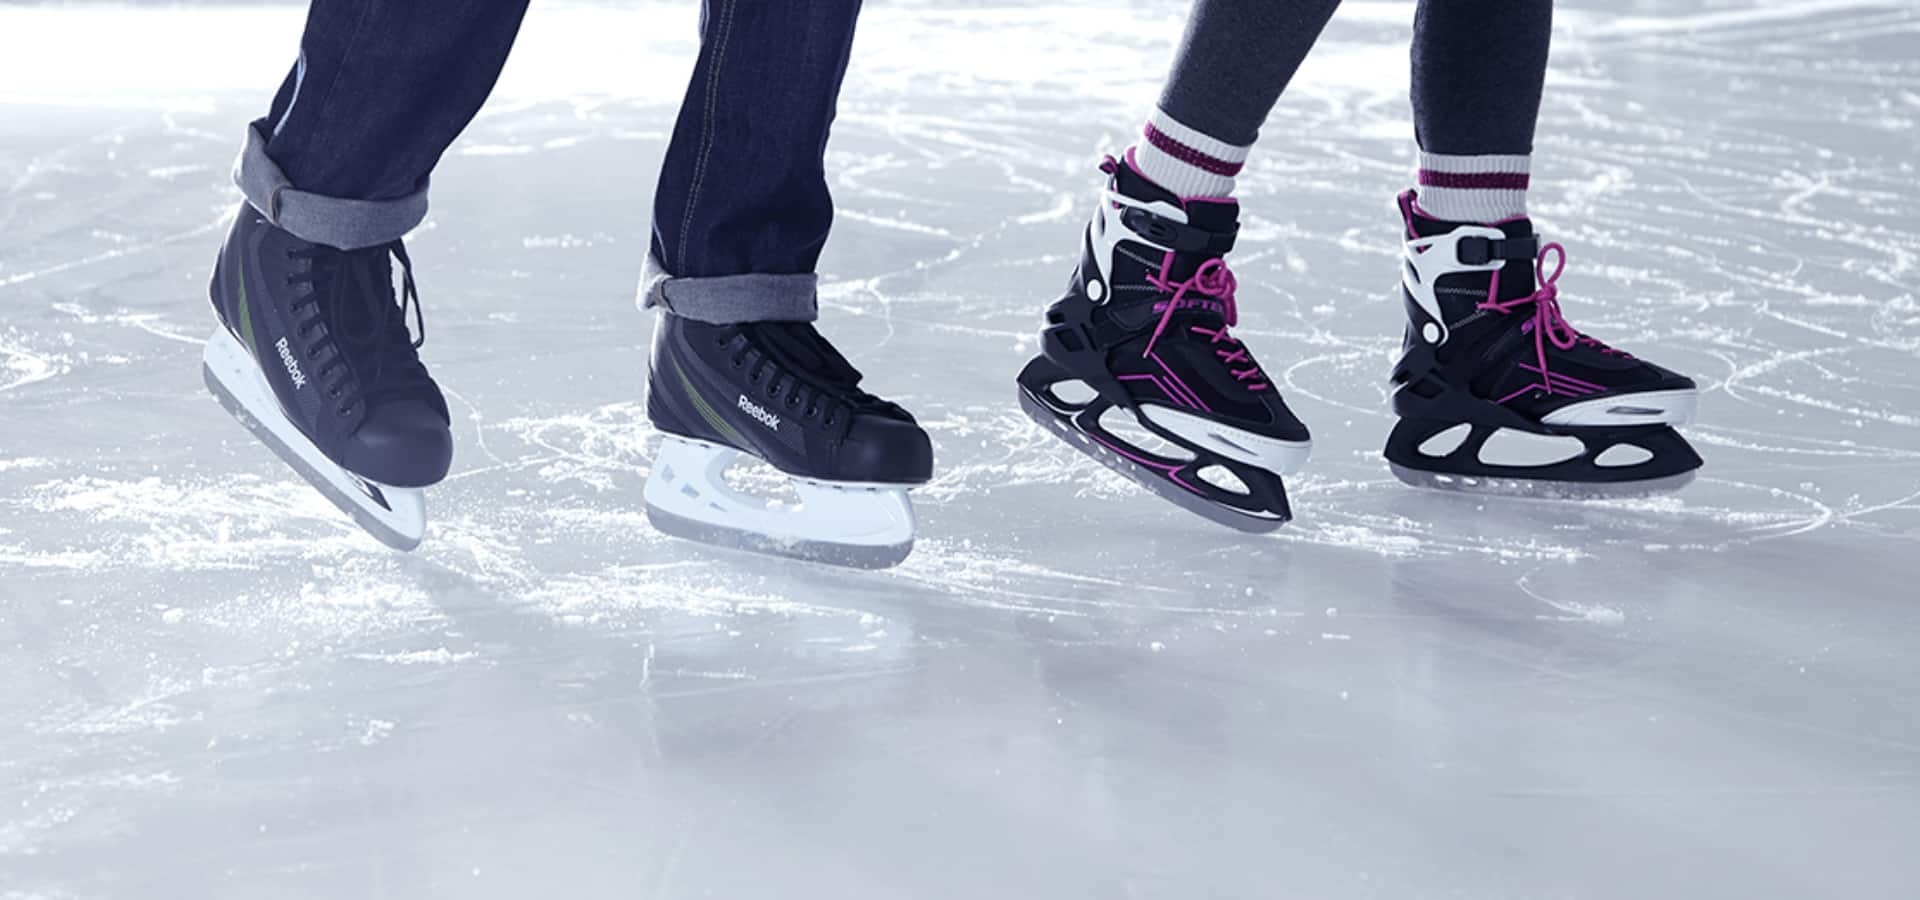 Gros plan de deux personnes patinant sur la glace